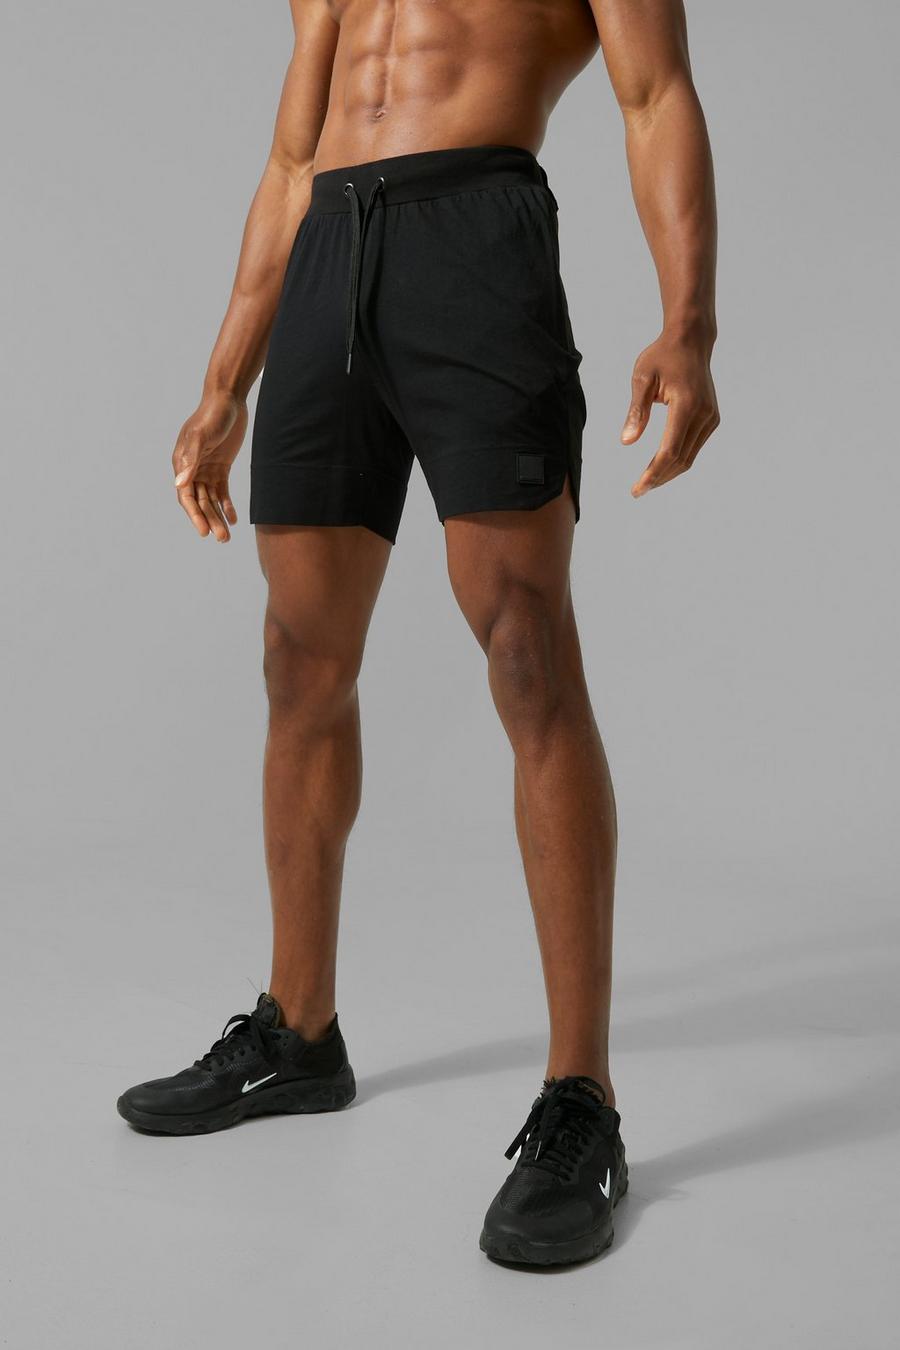 Man Active Muscle-Fit Shorts, Black noir